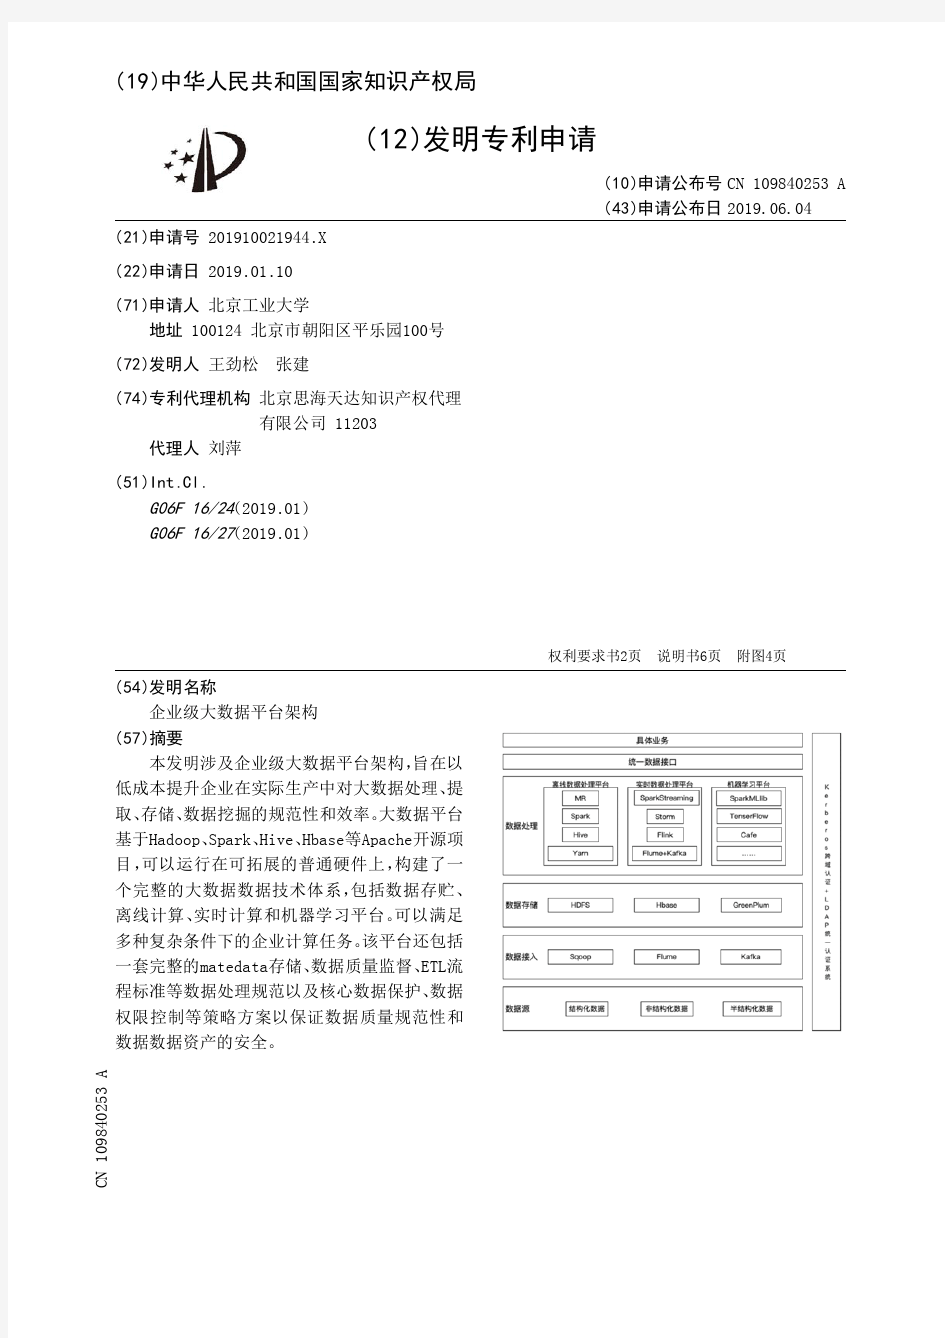 【CN109840253A】企业级大数据平台架构【专利】